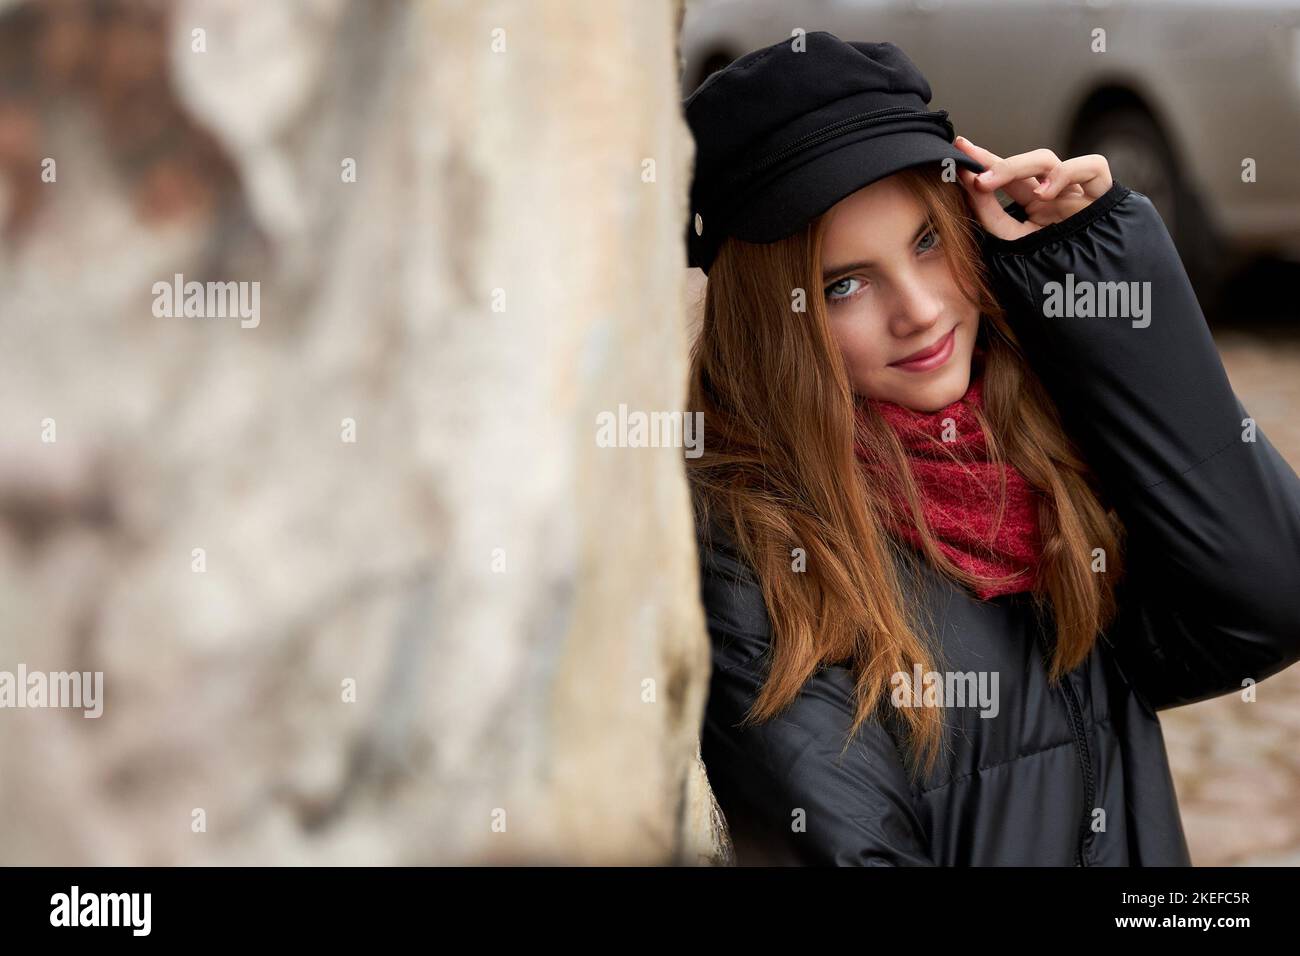 Fille dans une casquette noire avec un foulard rouge sur une rue de ville. Photo de haute qualité Banque D'Images